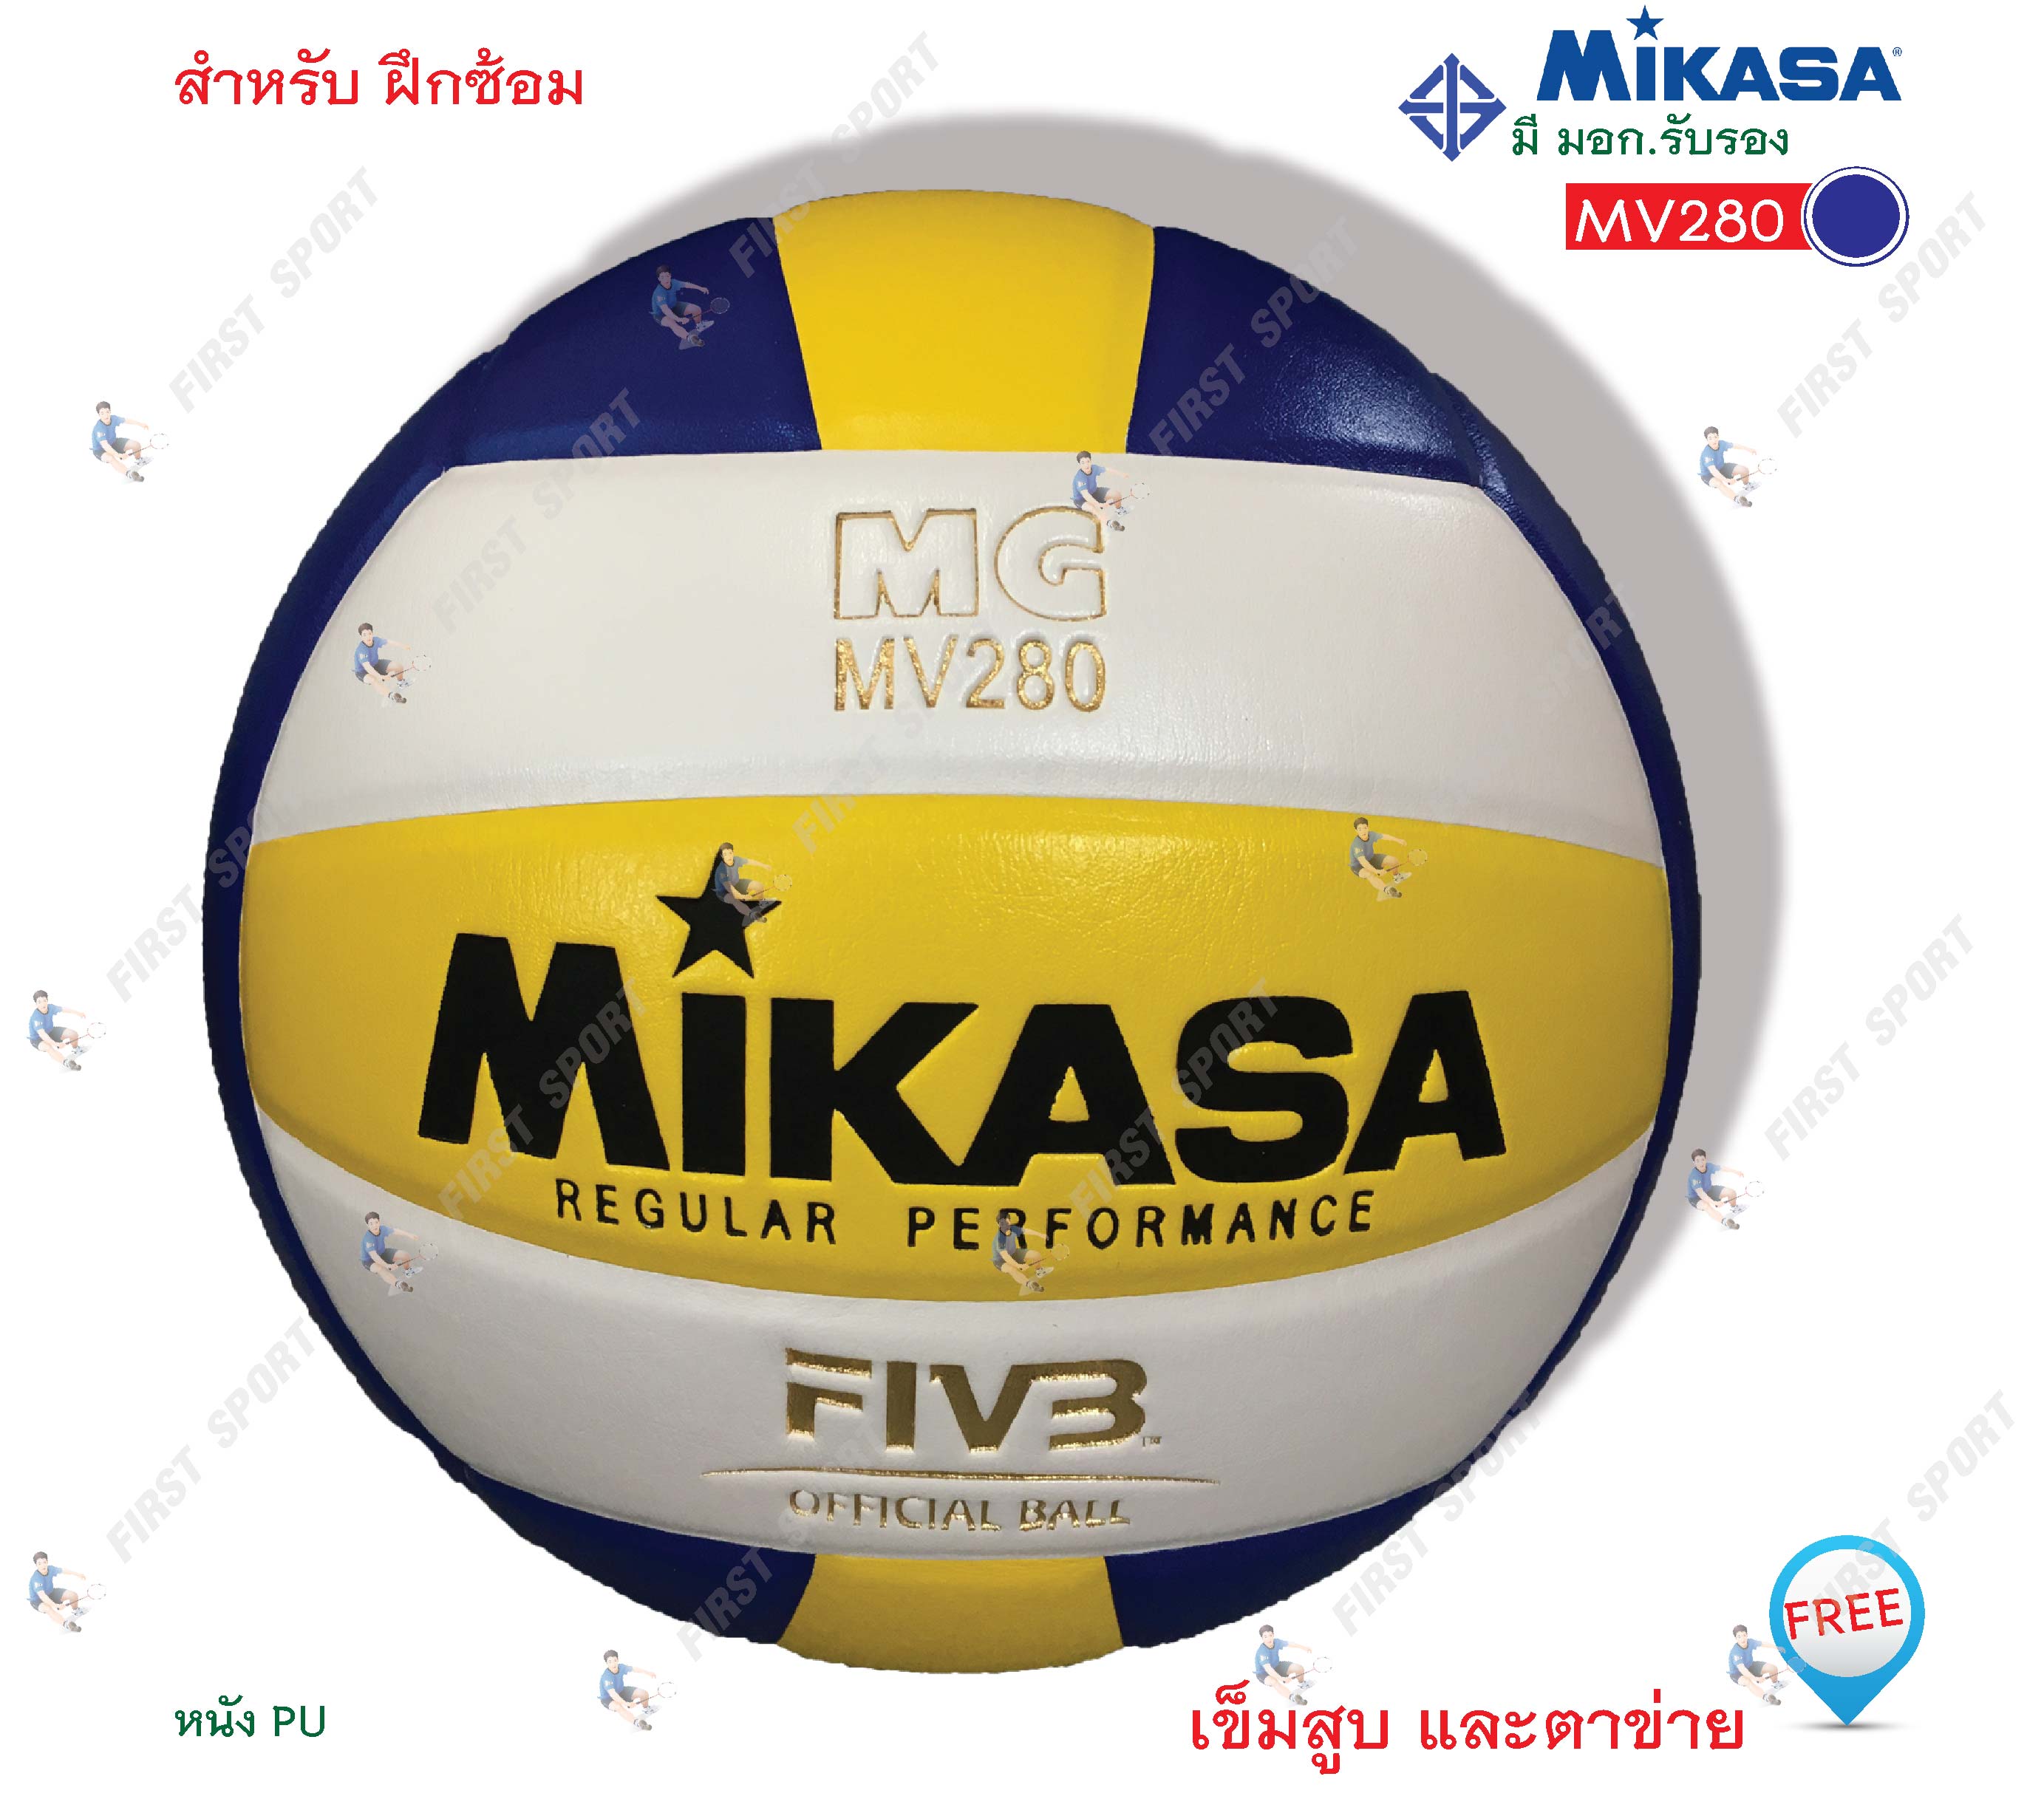 ลูกวอลเลย์บอล วอลเลย์บอล Mikasa รุ่น MV280 หนัง PU ของแท้ 100%